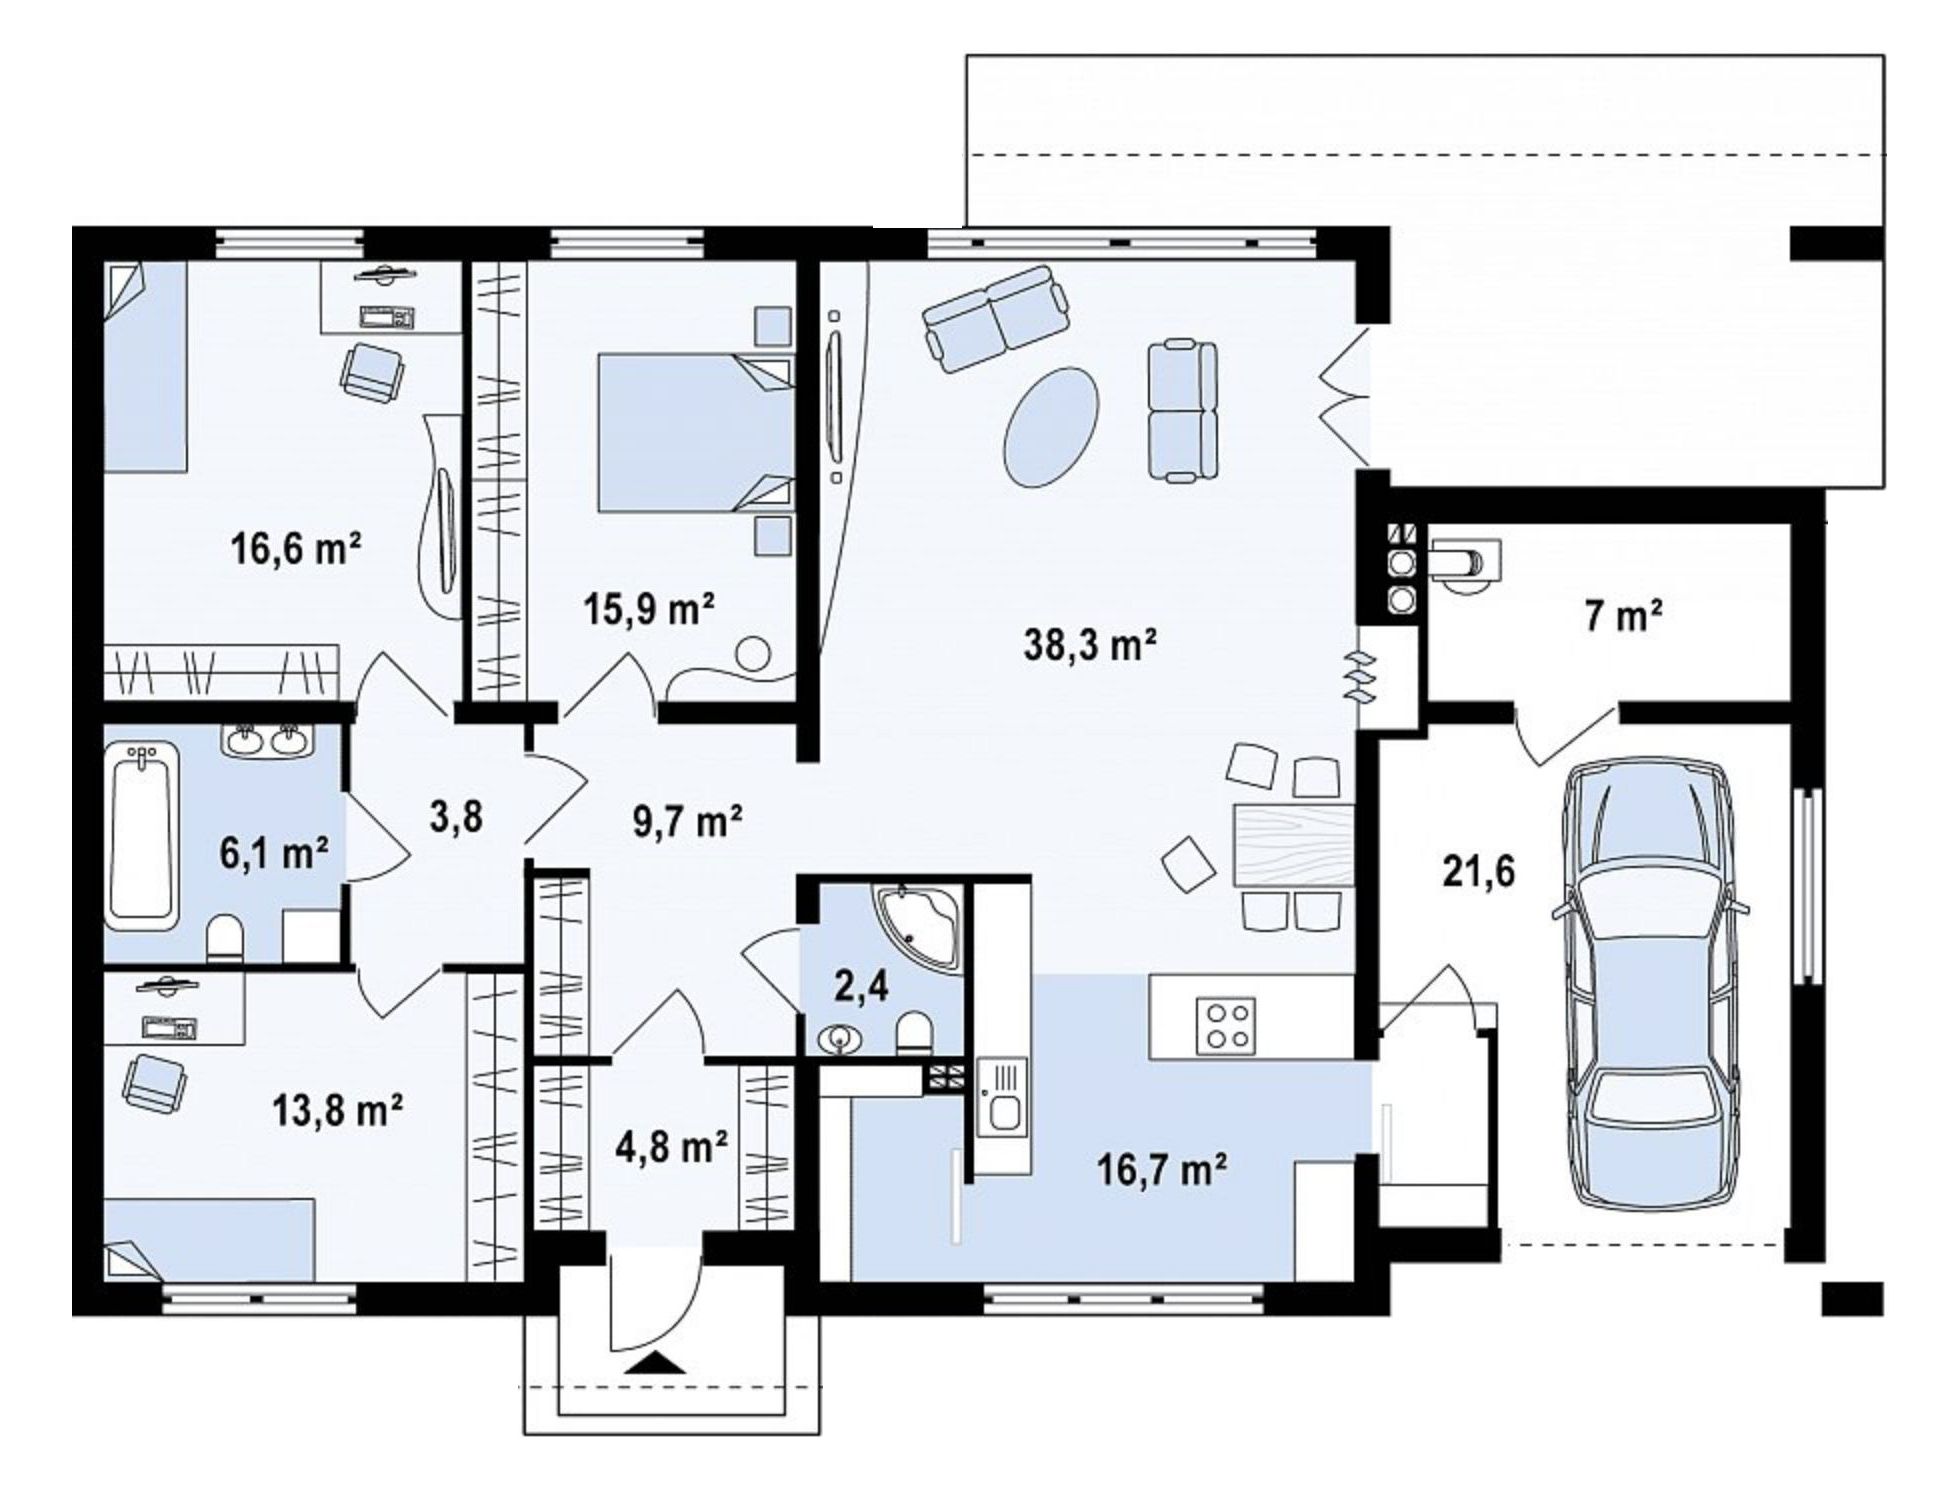 Дом с гаражом и 4 спальни. Z123 проект дома одноэтажного. Одноэтажный дом 130 м2 планировка. План дома 130 кв одноэтажный с гаражом. План одноэтажного дома с гаражом 130 кв м.